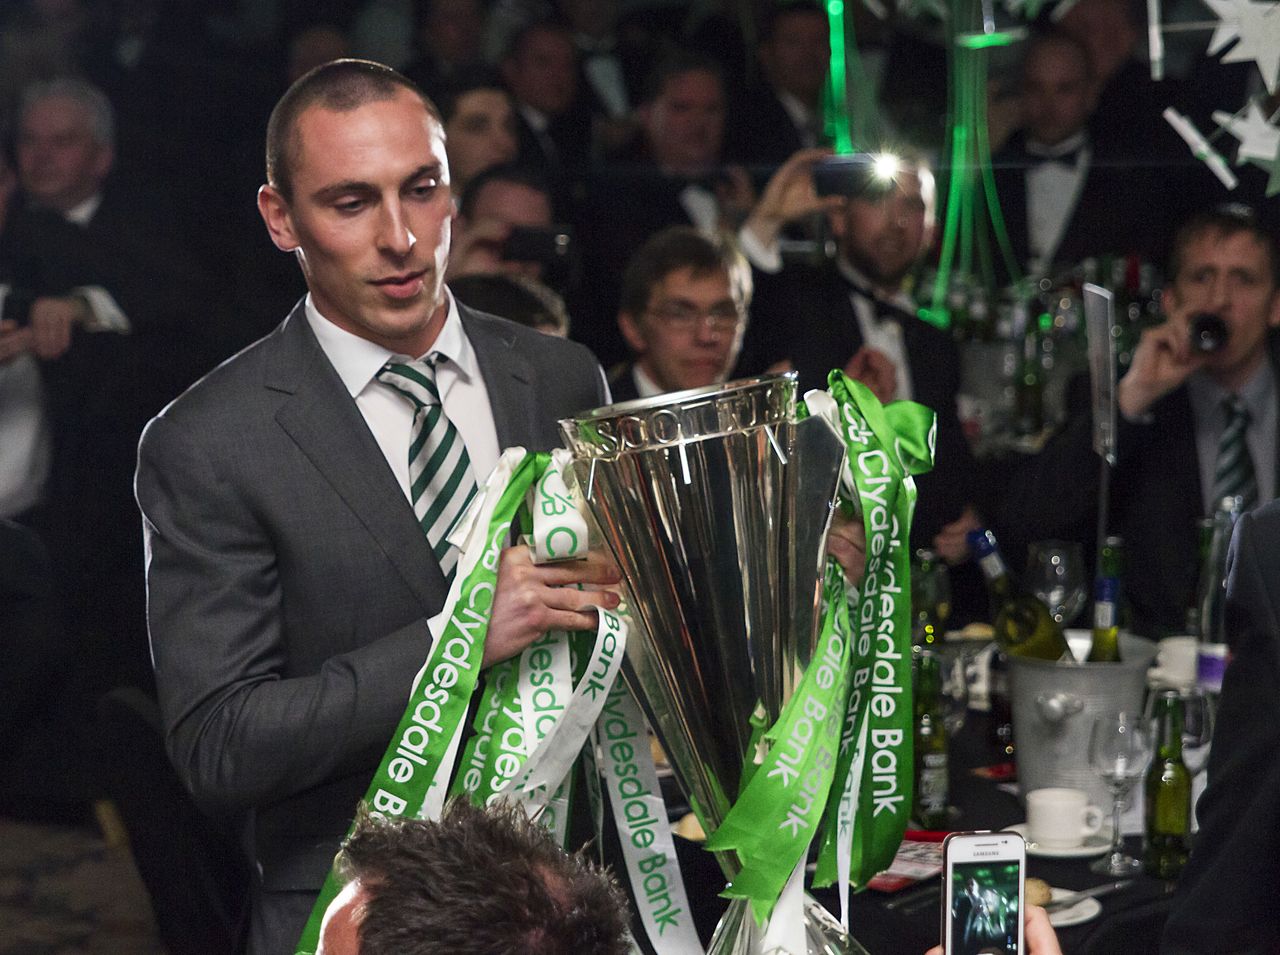 Celtic unveil new strip as captain Scott Brown praises Aberdeen title  challenge